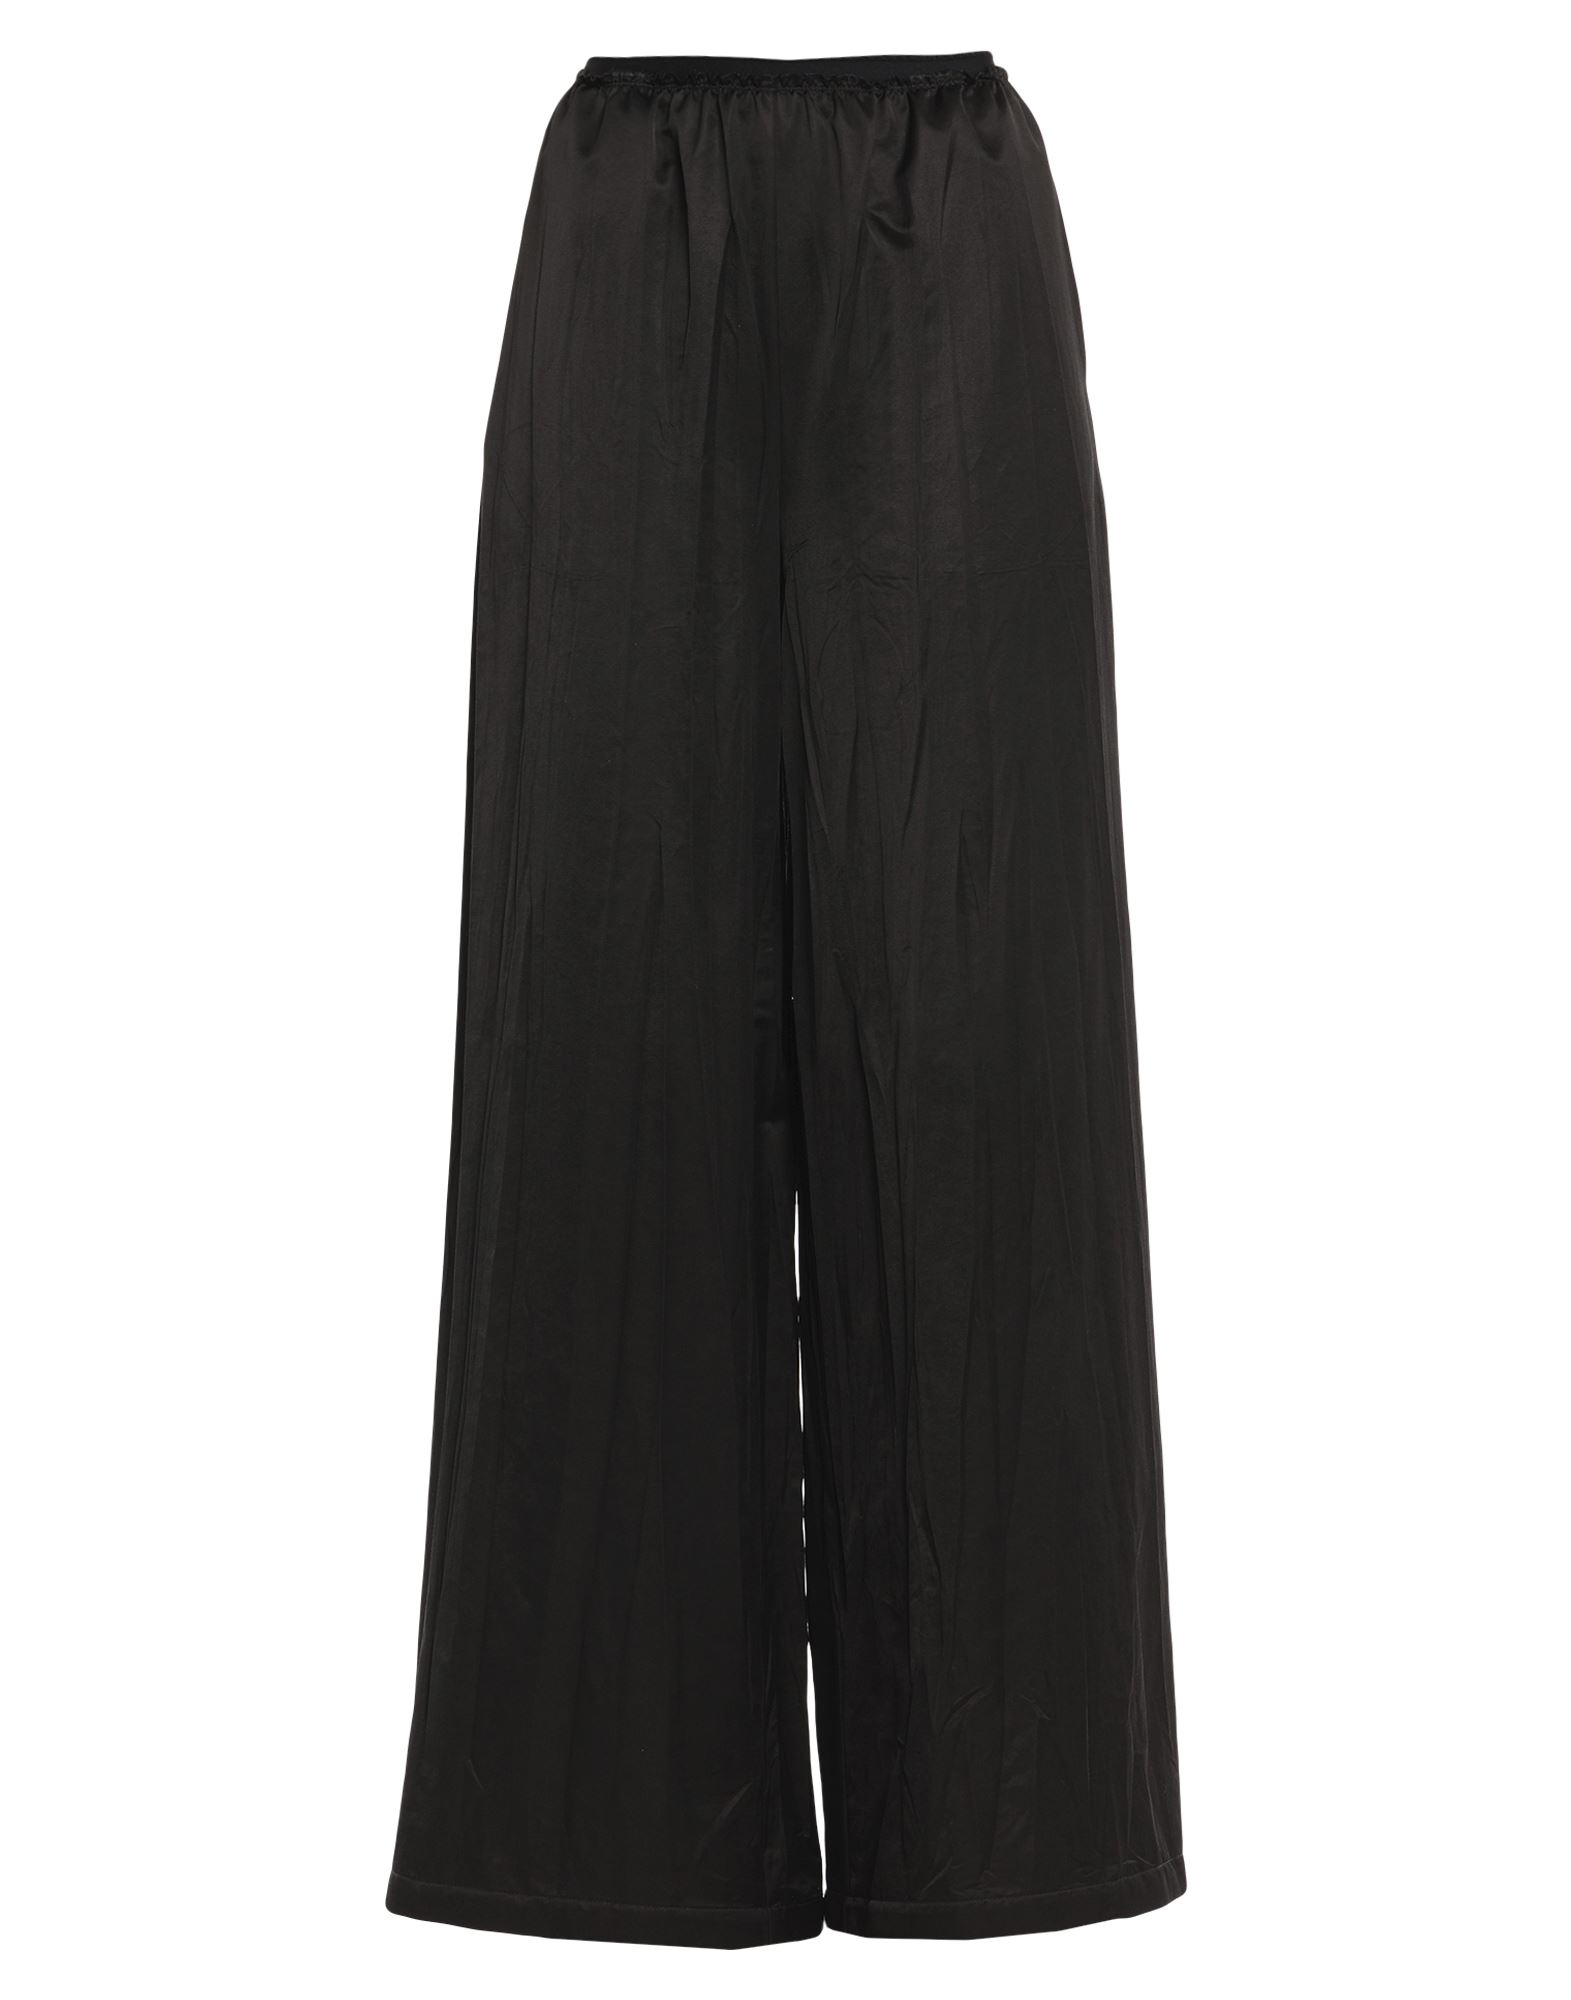 Shop Mm6 Maison Margiela Woman Pants Black Size 10 Cotton, Viscose